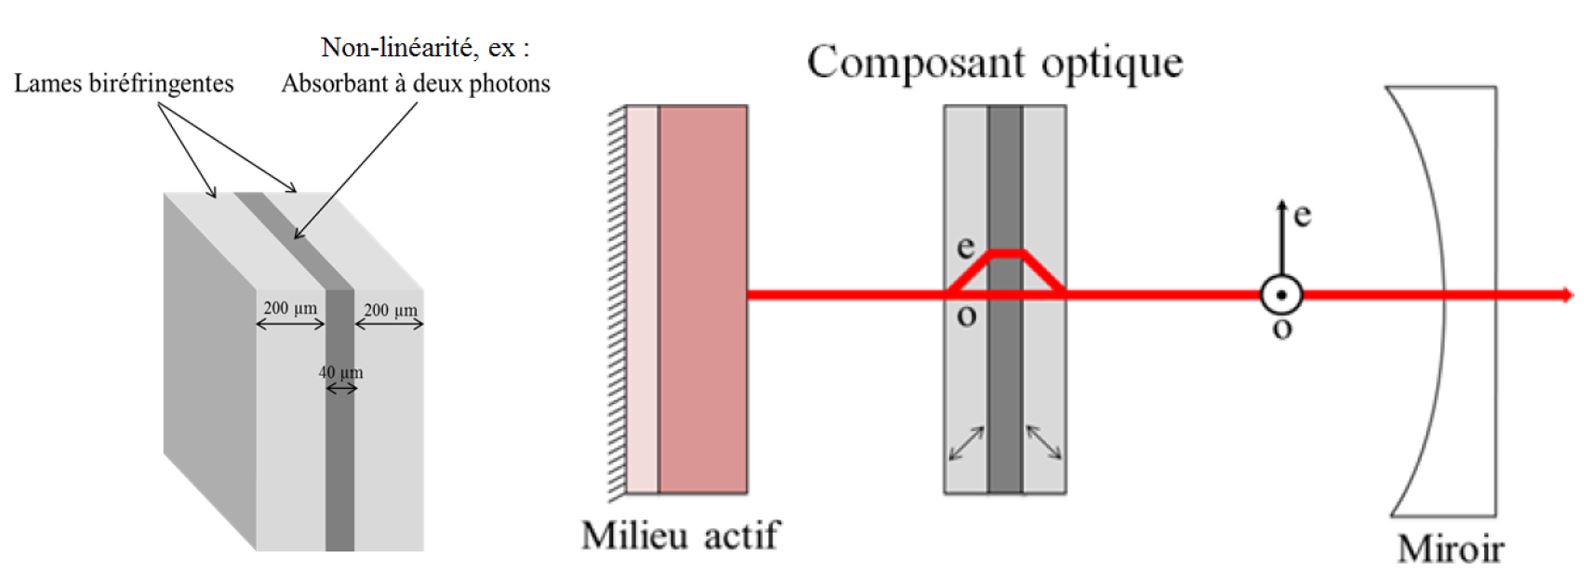 Composant optique formé de deux cristaux biréfringents entourant un milieu à absorption non-linéaire et schéma de principe du dispositif optique.